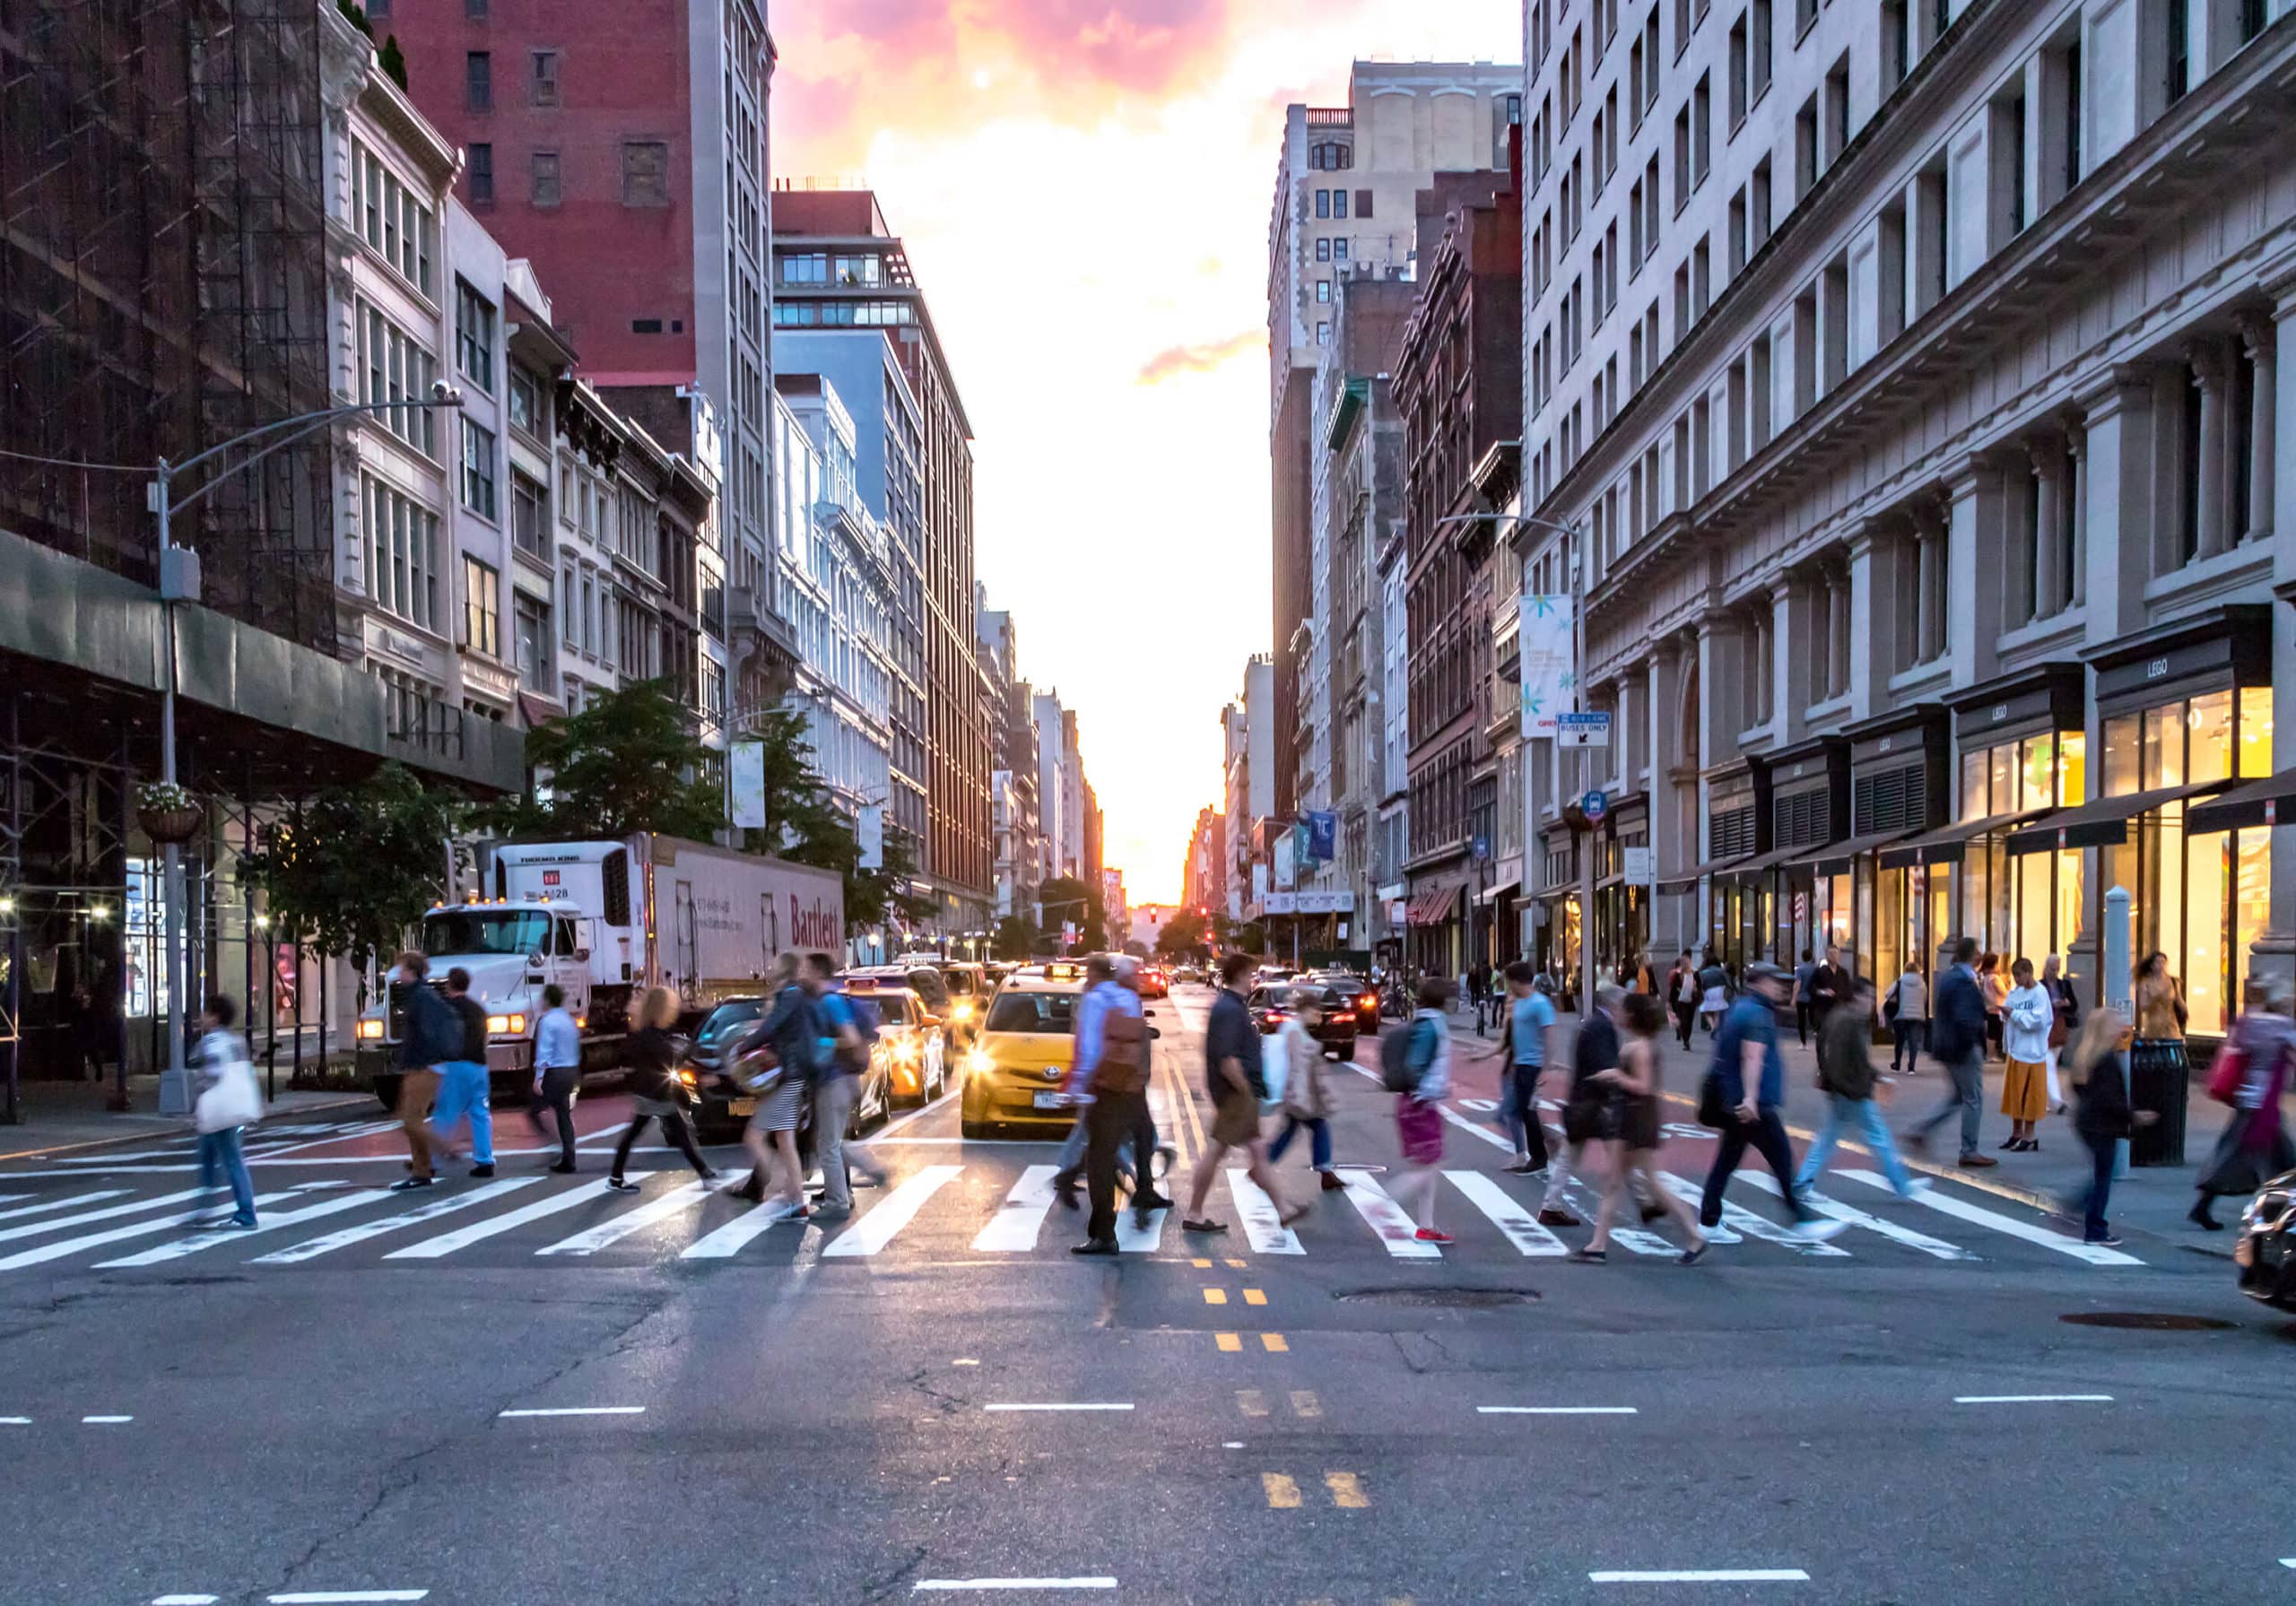 People in a busy city walking across a crosswalk